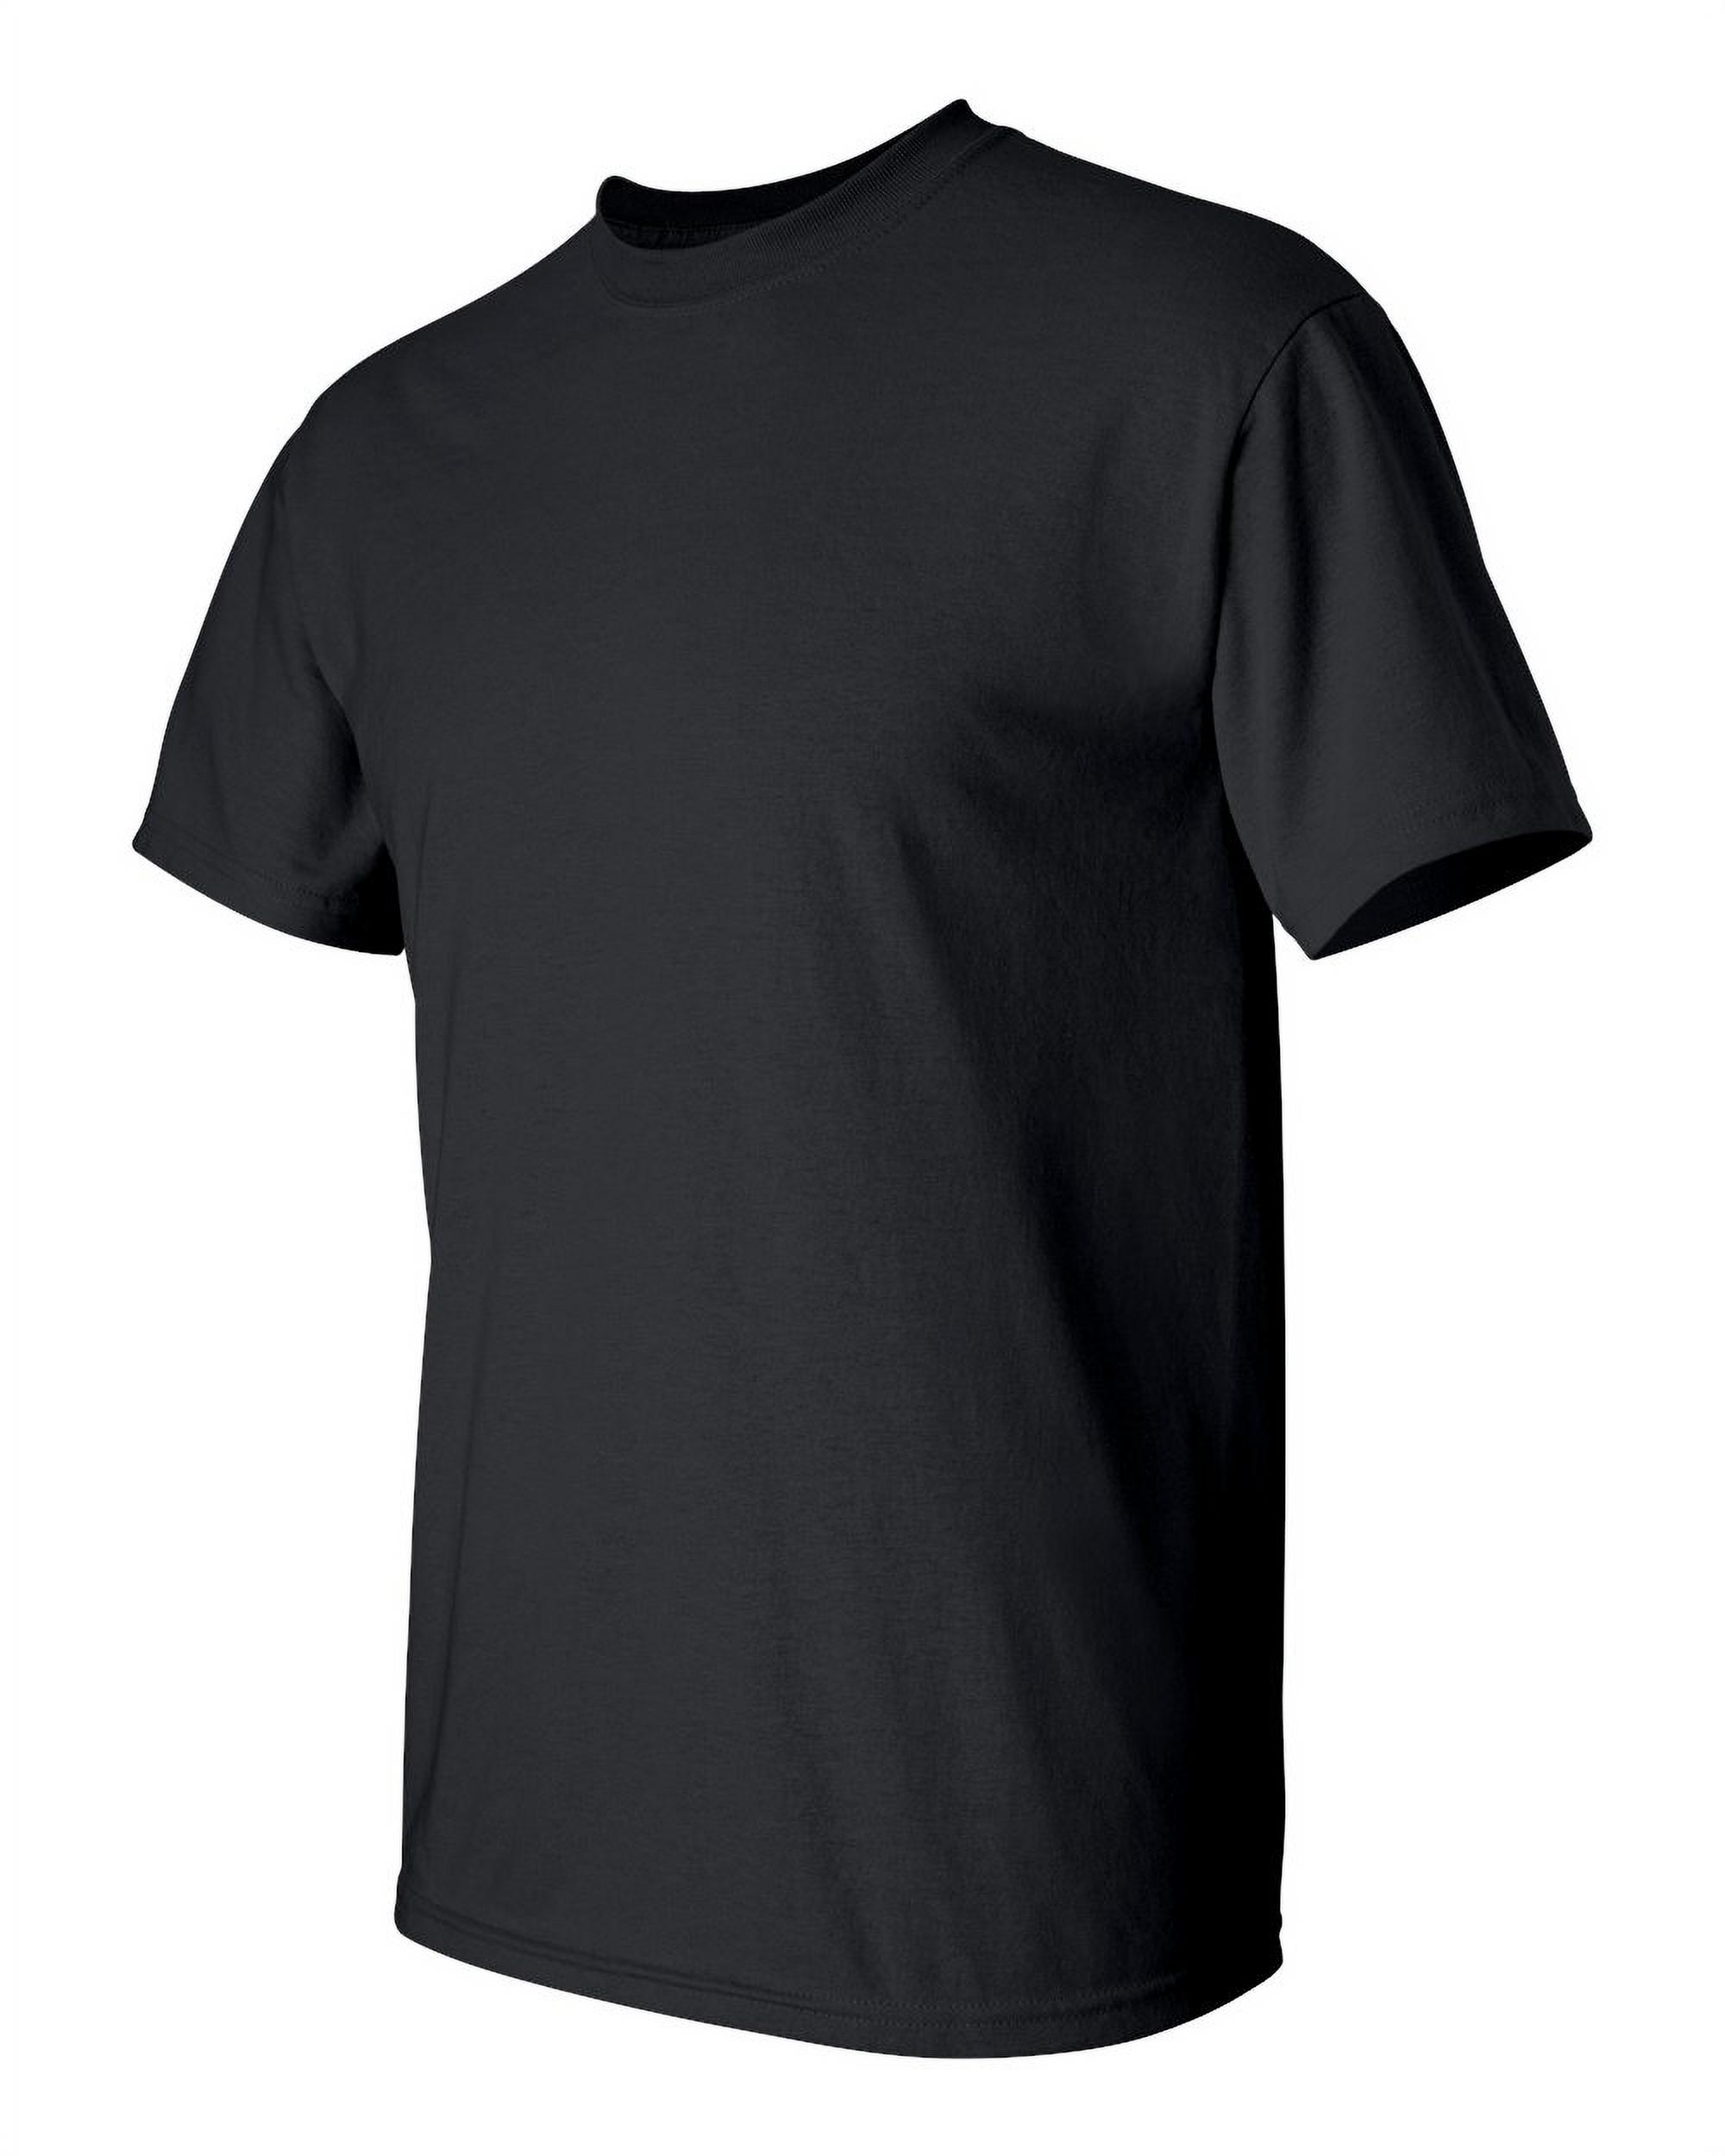 Big Men's T-Shirt - Dallas - image 3 of 5